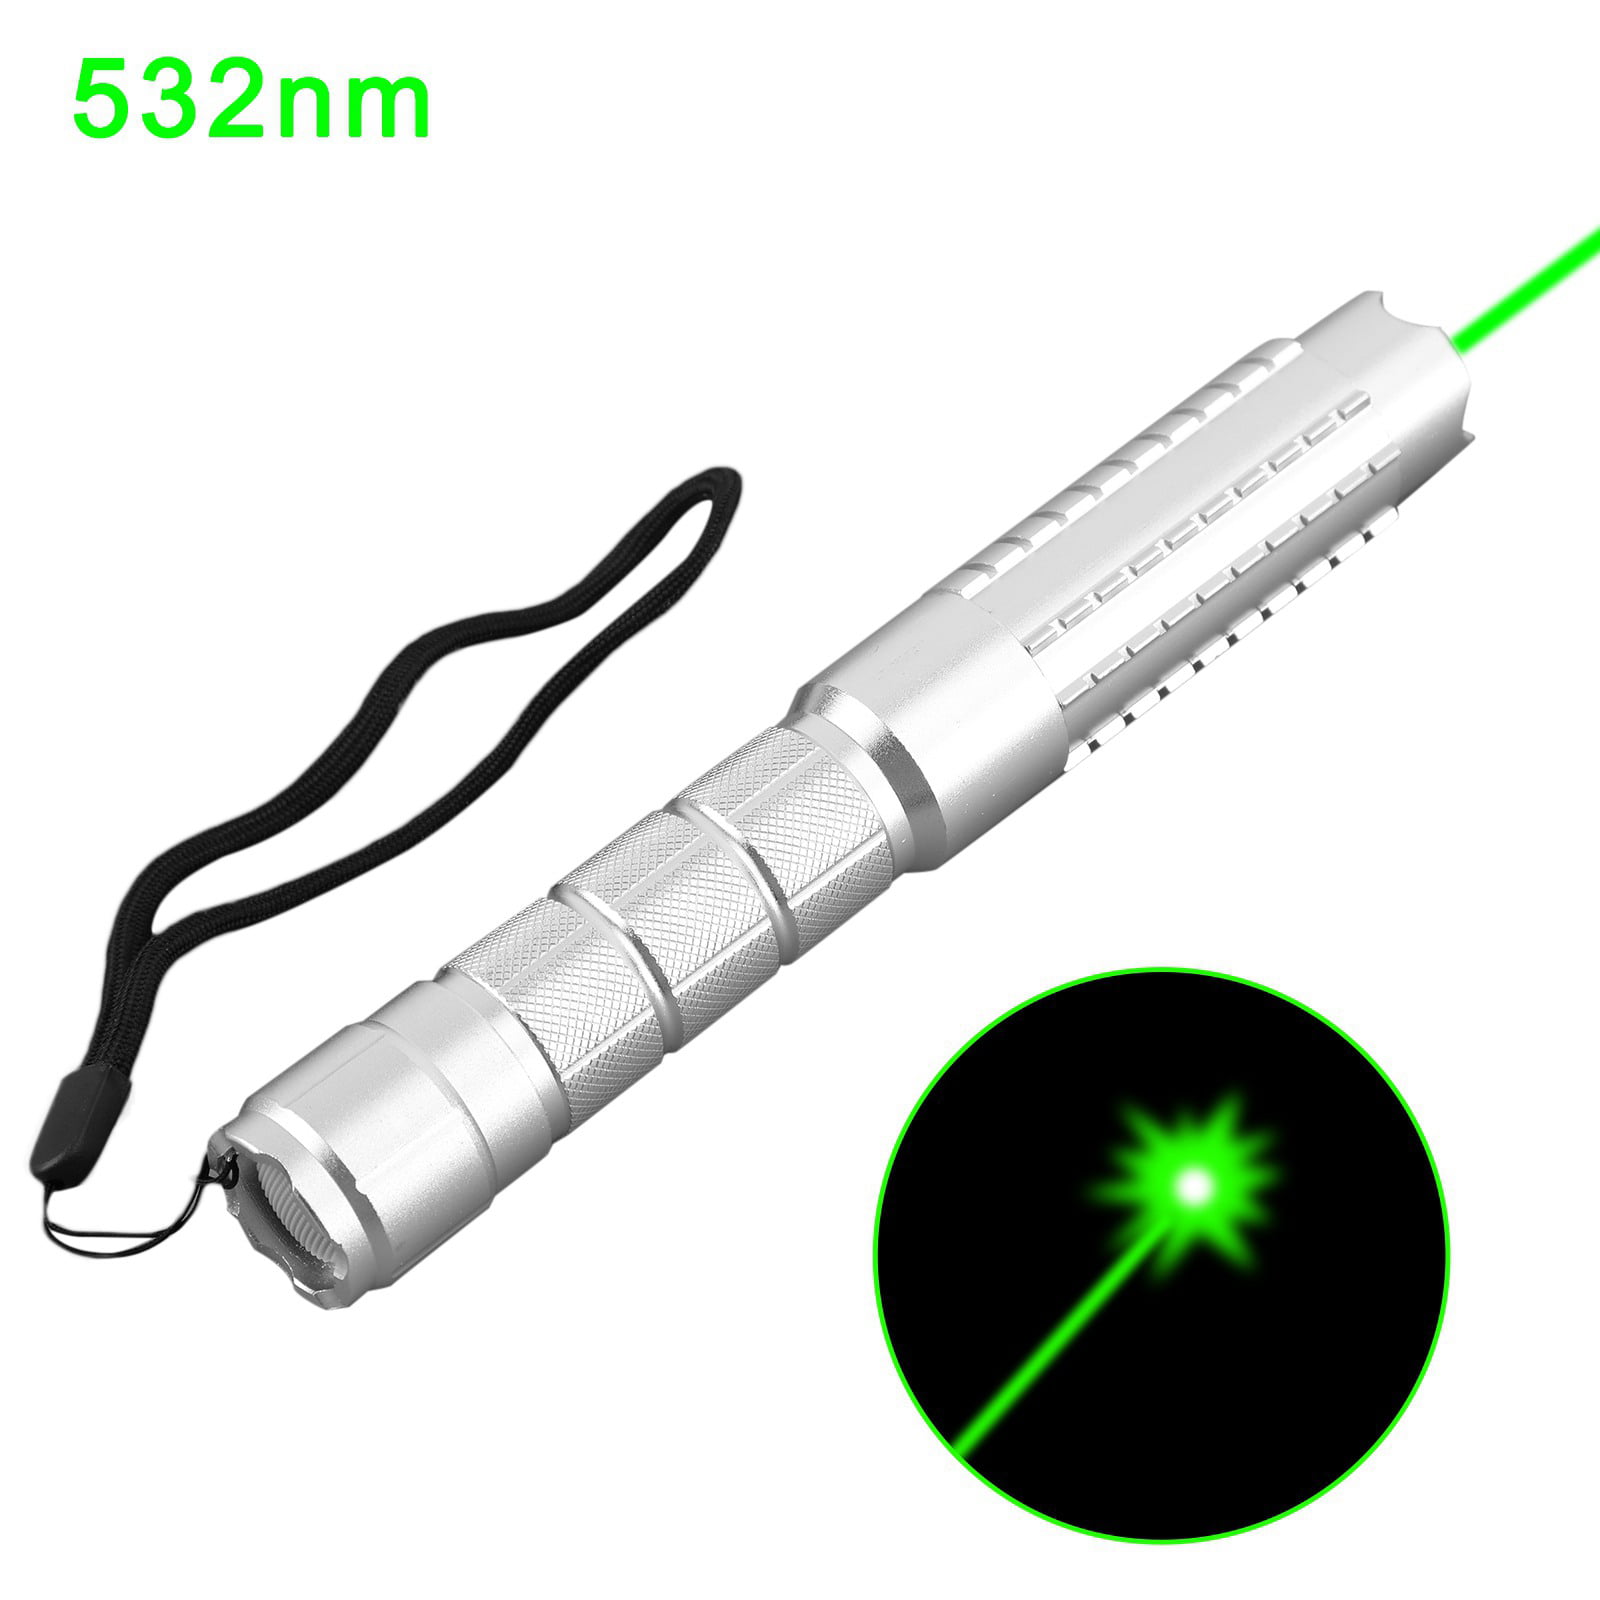 50Miles 532nm Pointer Pen Burning Beam Green Light USA High Power Military Laser 